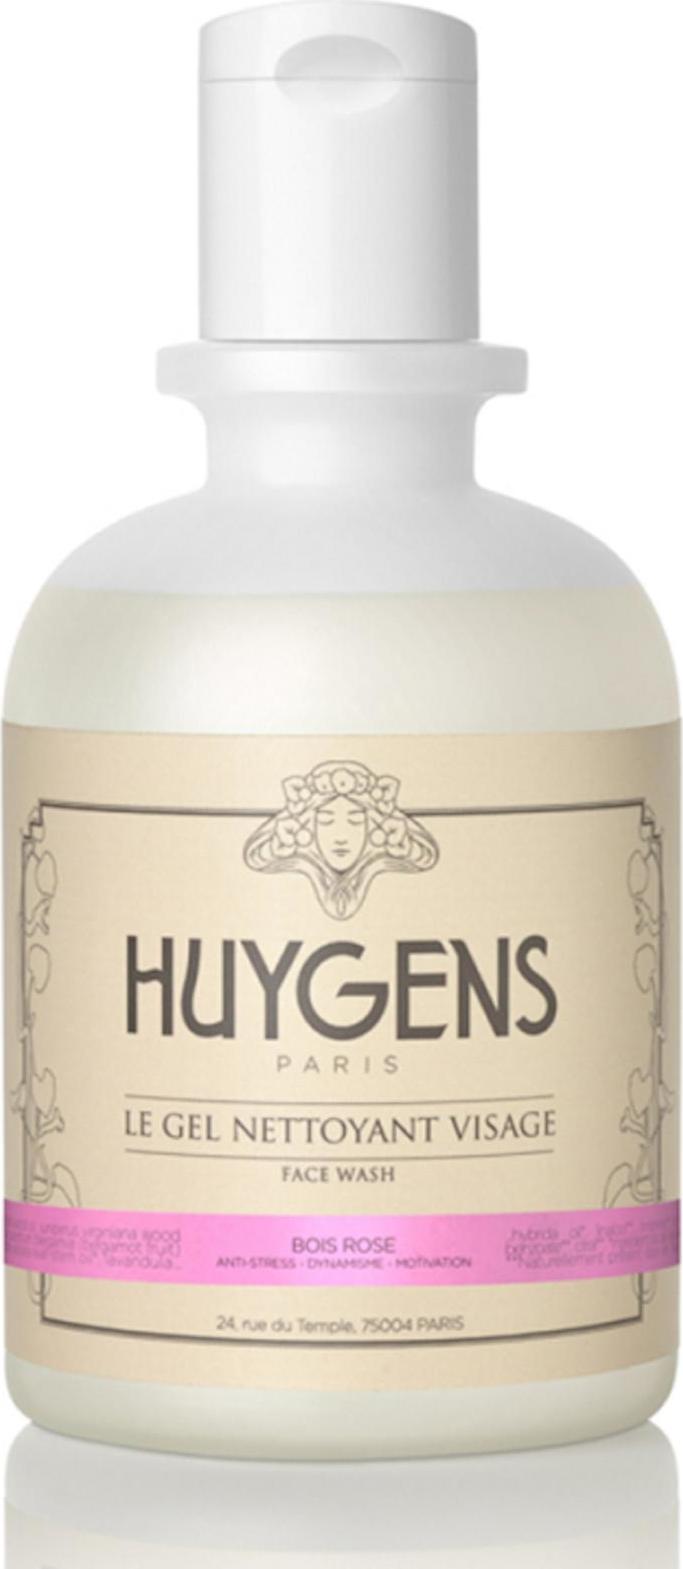 HUYGENS Paris Čistící regenerační gel Bois Rose 250 ml